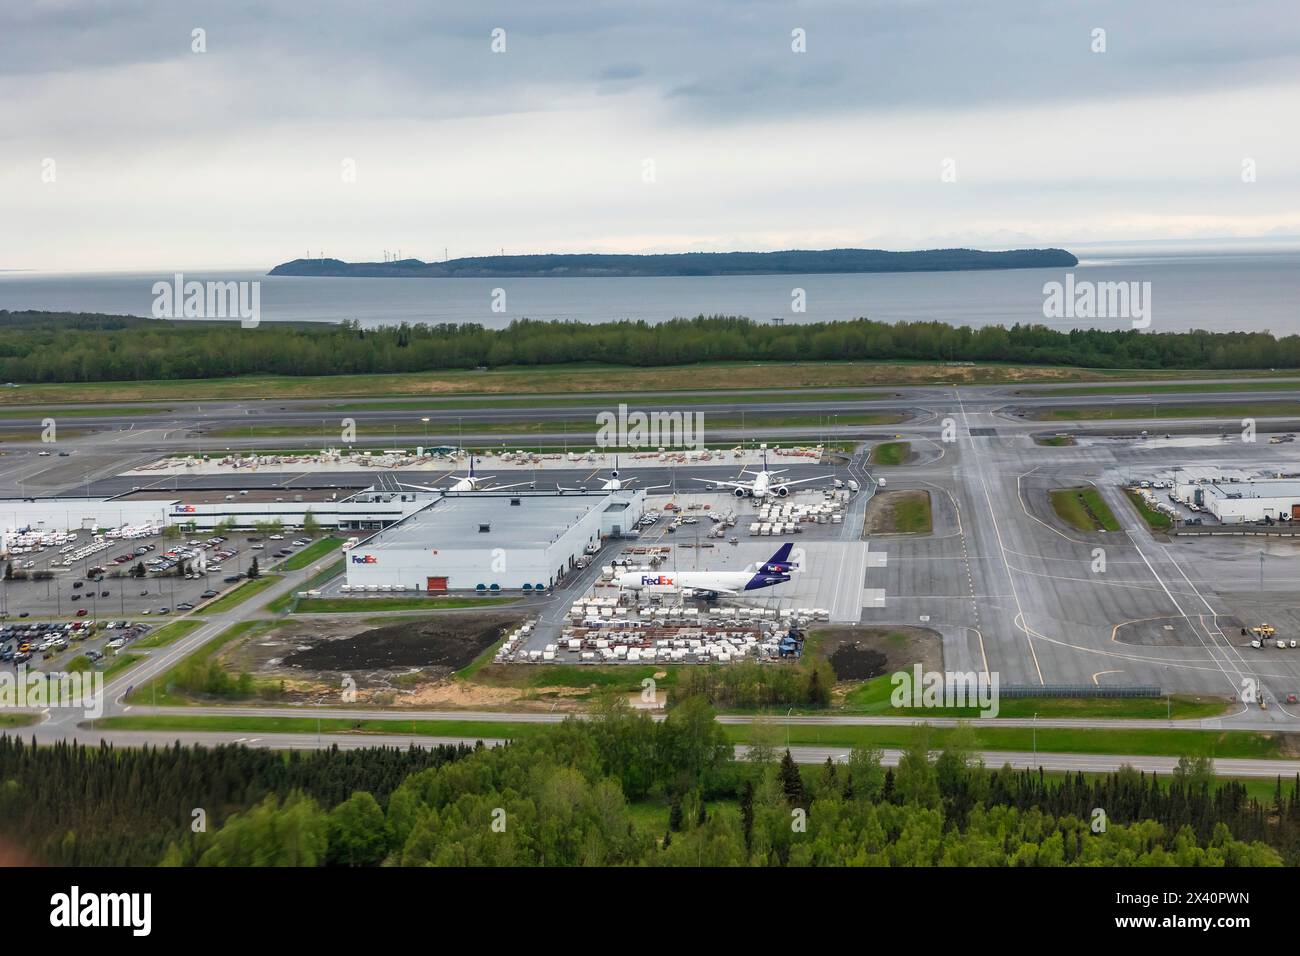 Flughafen einer amerikanischen Frachtzustellgesellschaft in Anchorage, Alaska, USA; Anchorage, Alaska, Vereinigte Staaten von Amerika Stockfoto